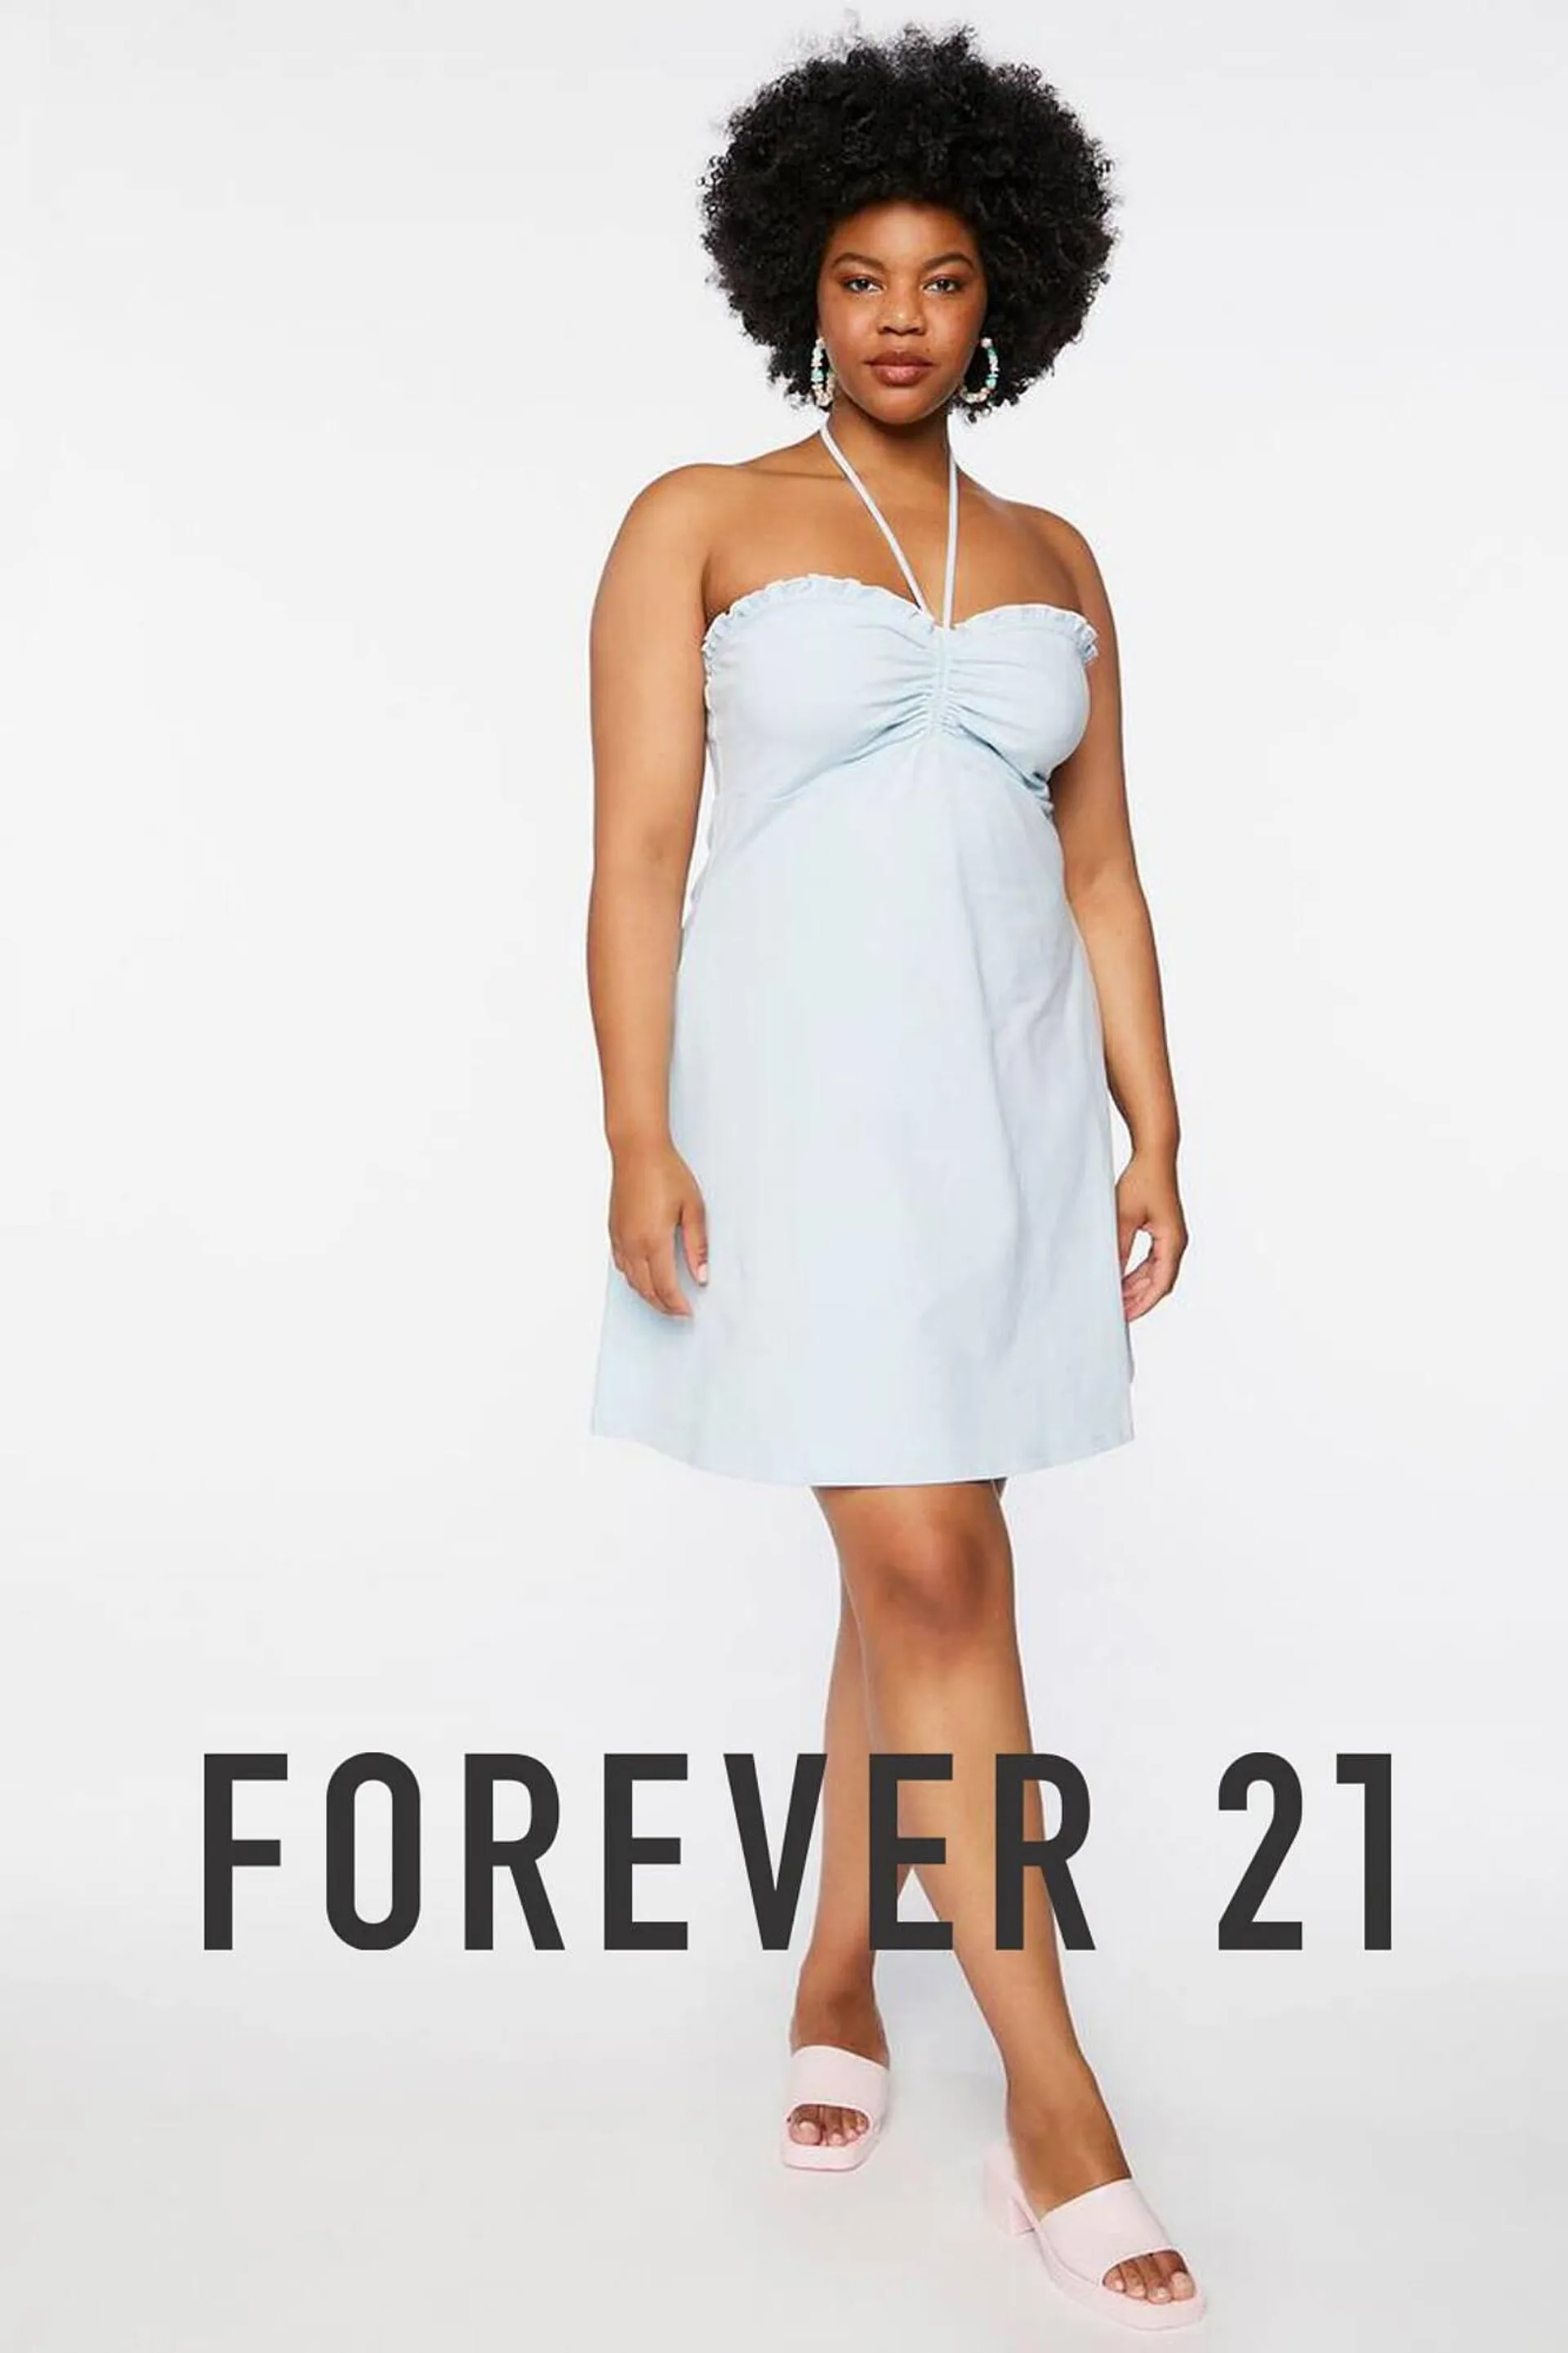 Forever 21 Catalog - 1